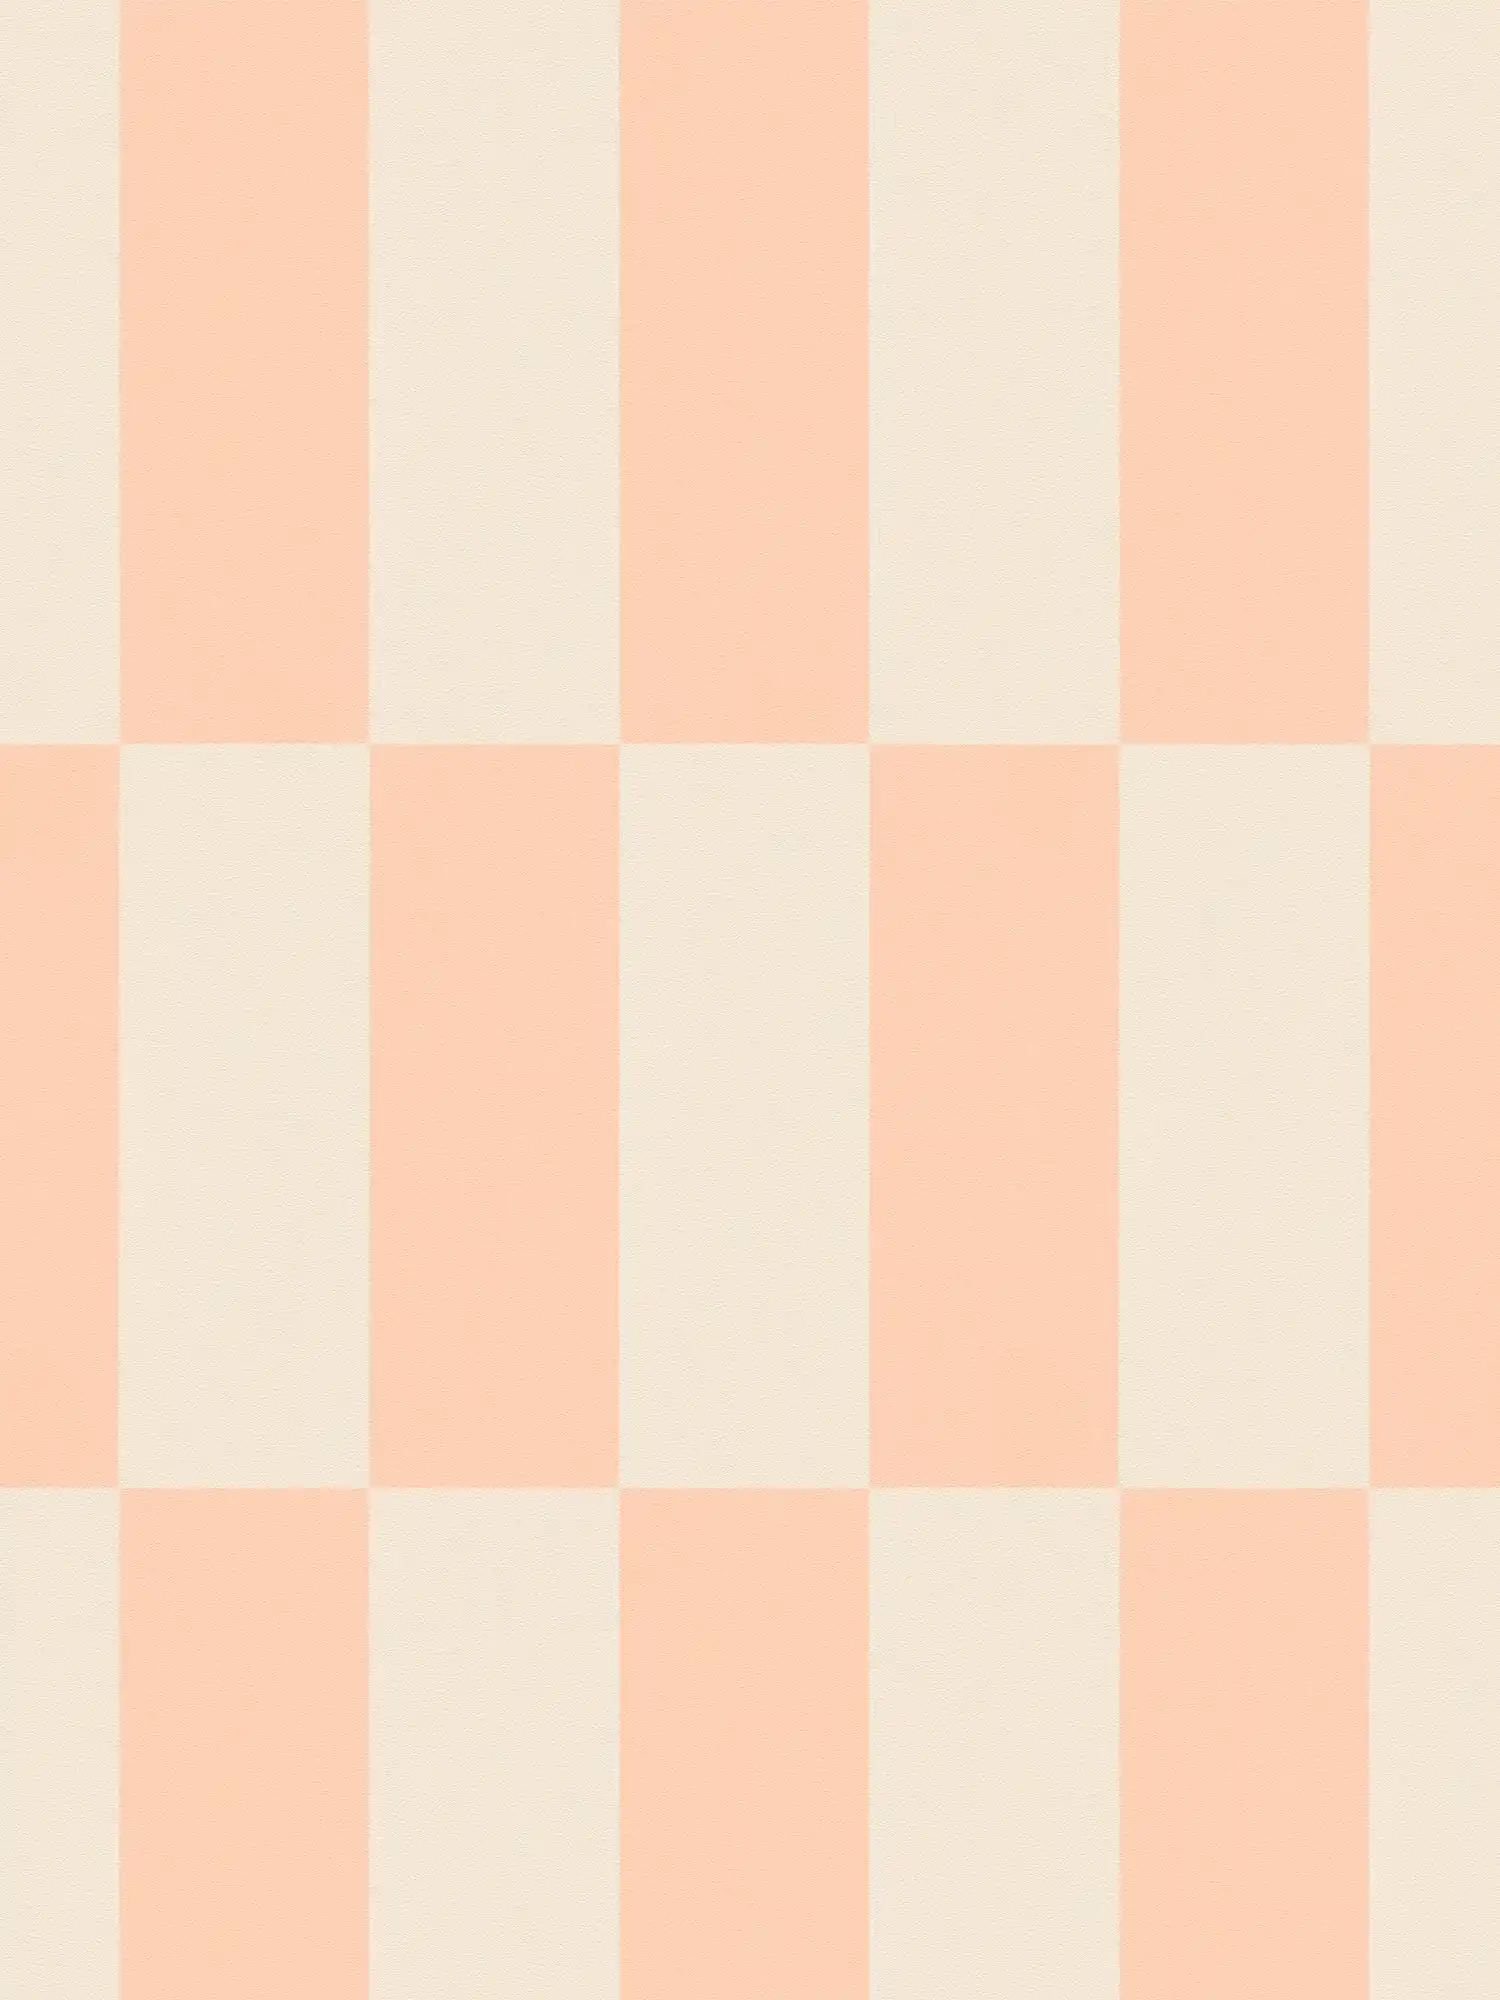 Vliesbehang met grafisch rechthoekpatroon - crème, roze
